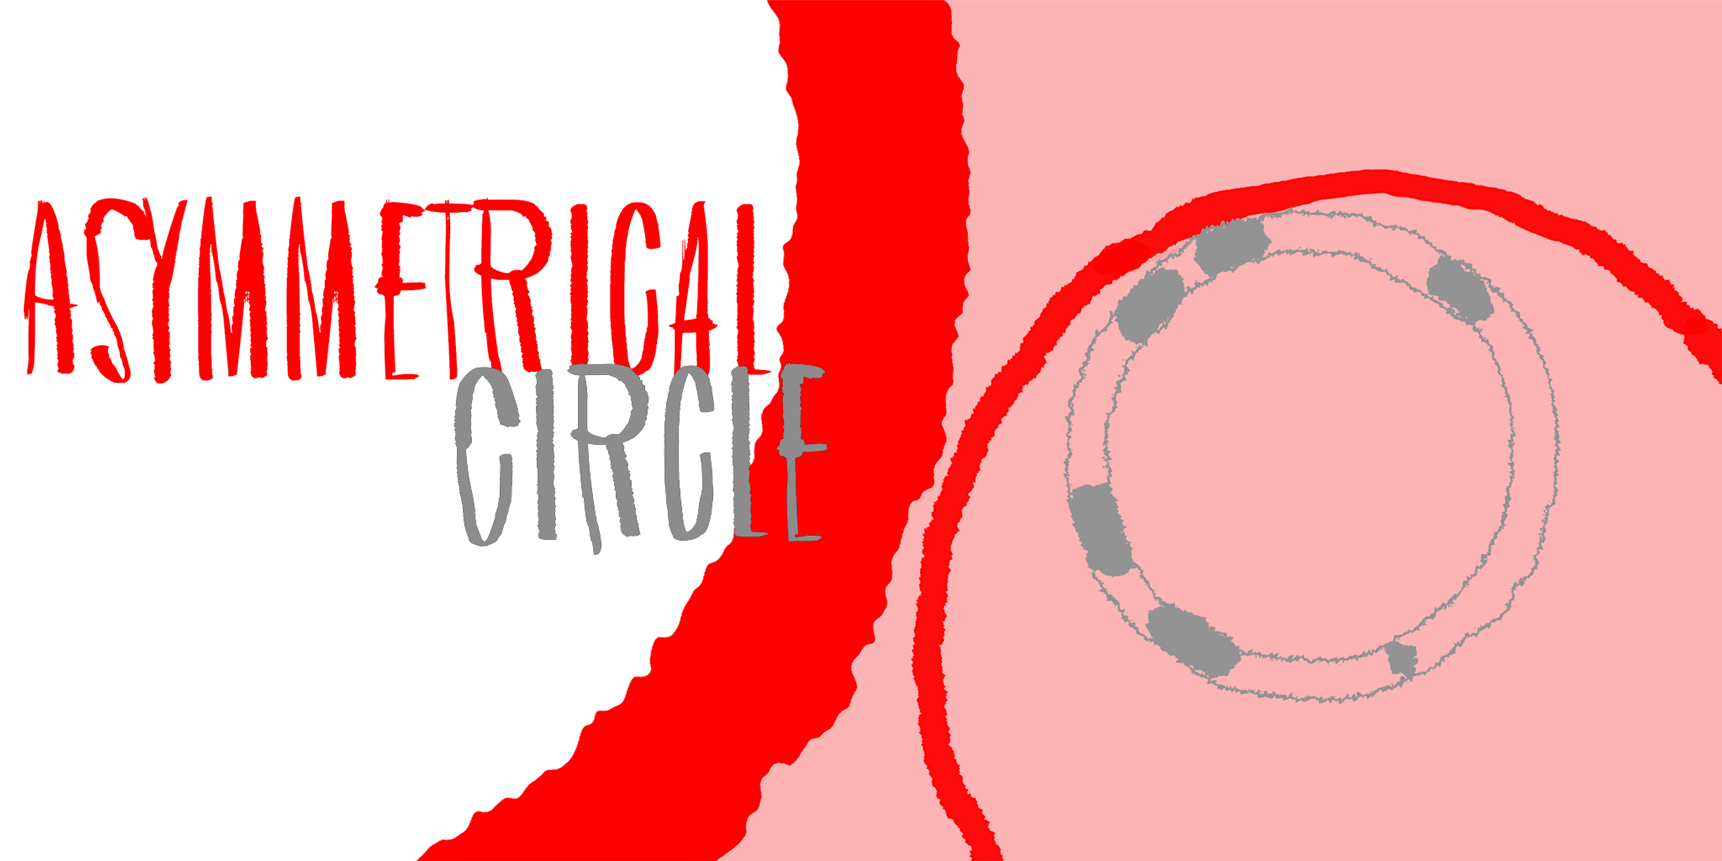 Asymmetrical Circle